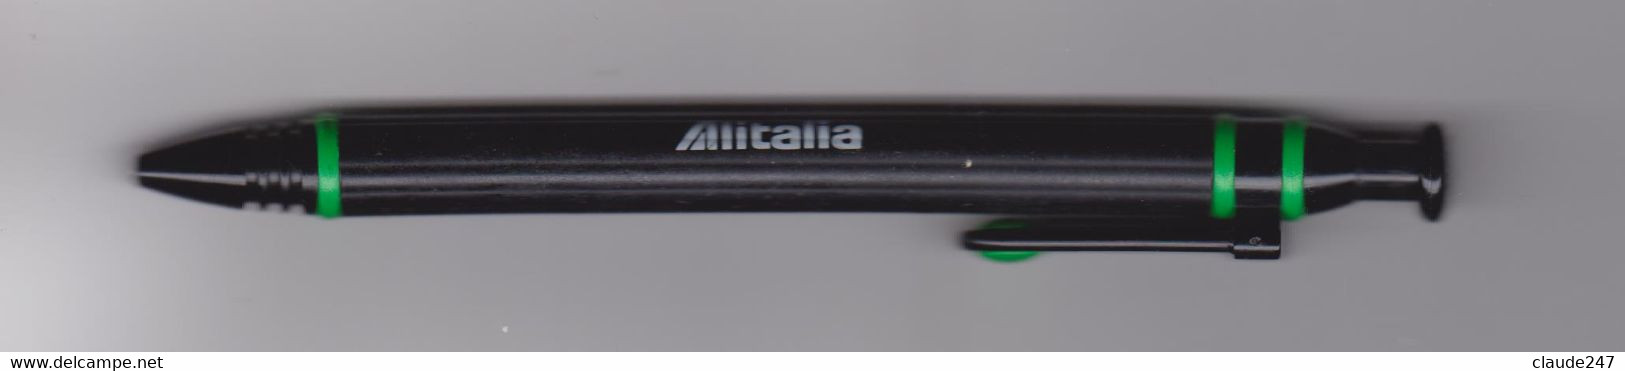 Alitalia Penna Biro Anni 1980/1990 - Reclamegeschenk